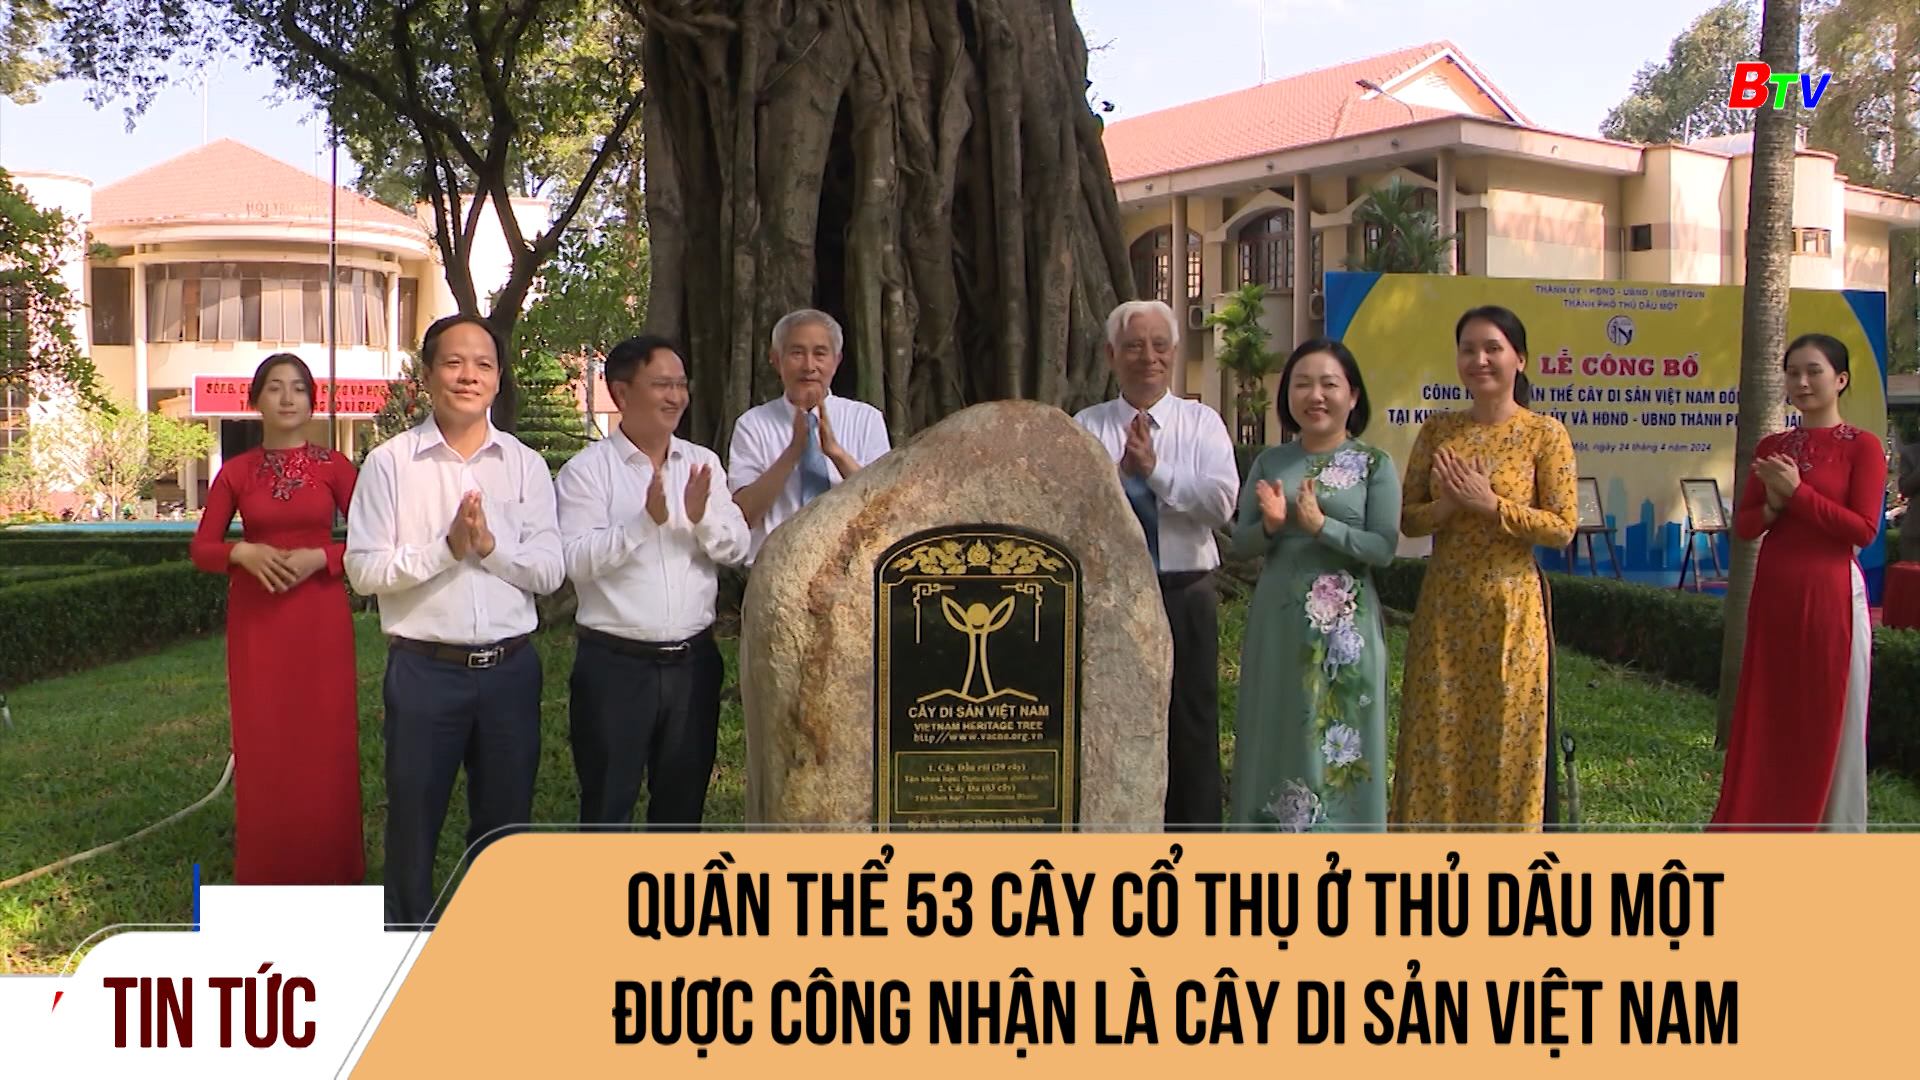 Quần thể 53 cây cổ thụ ở Thủ Dầu Một được công nhận là cây di sản Việt Nam	